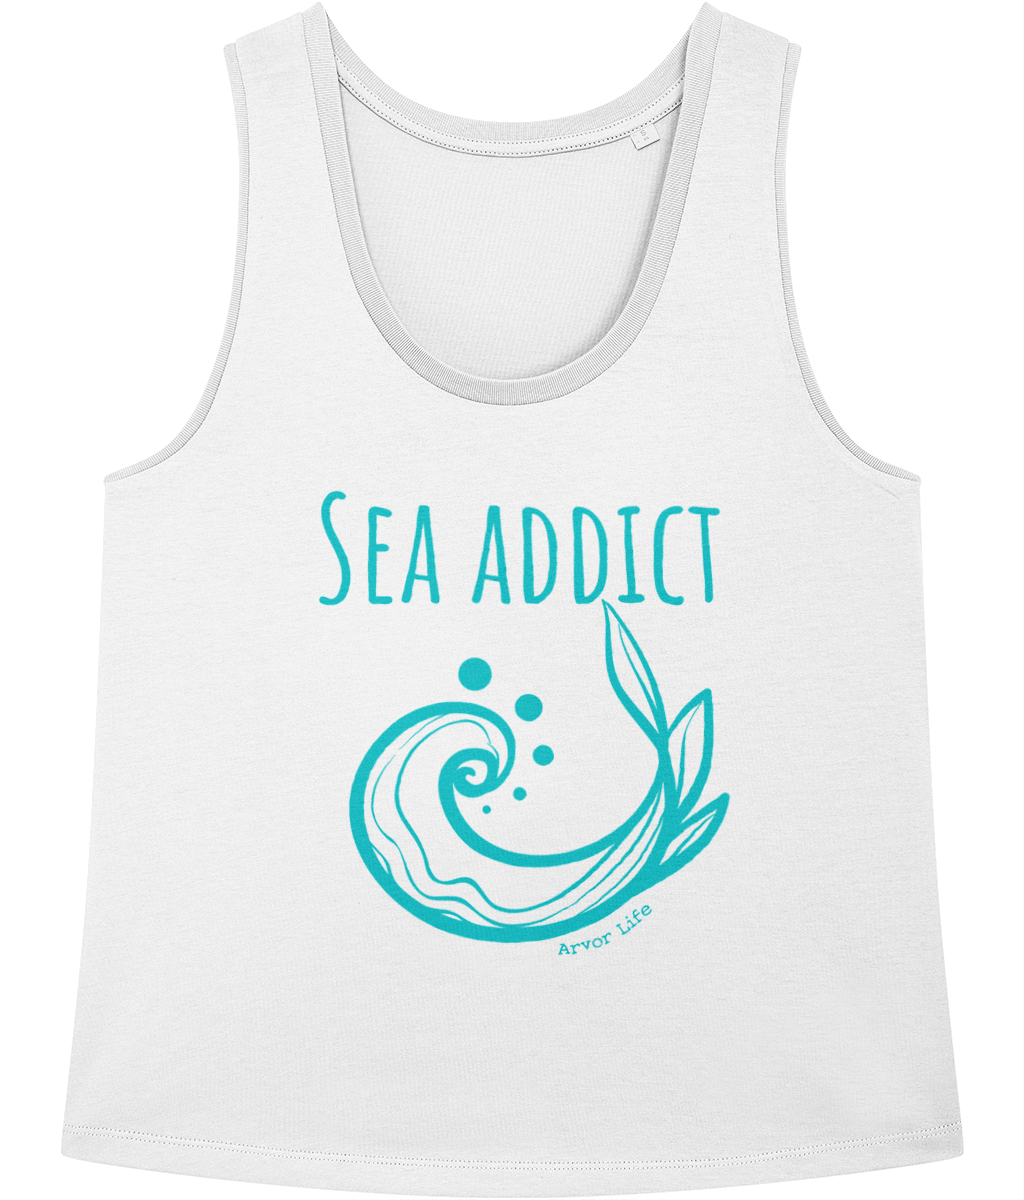 Sea Addict 100% Organic Cotton Vest Top